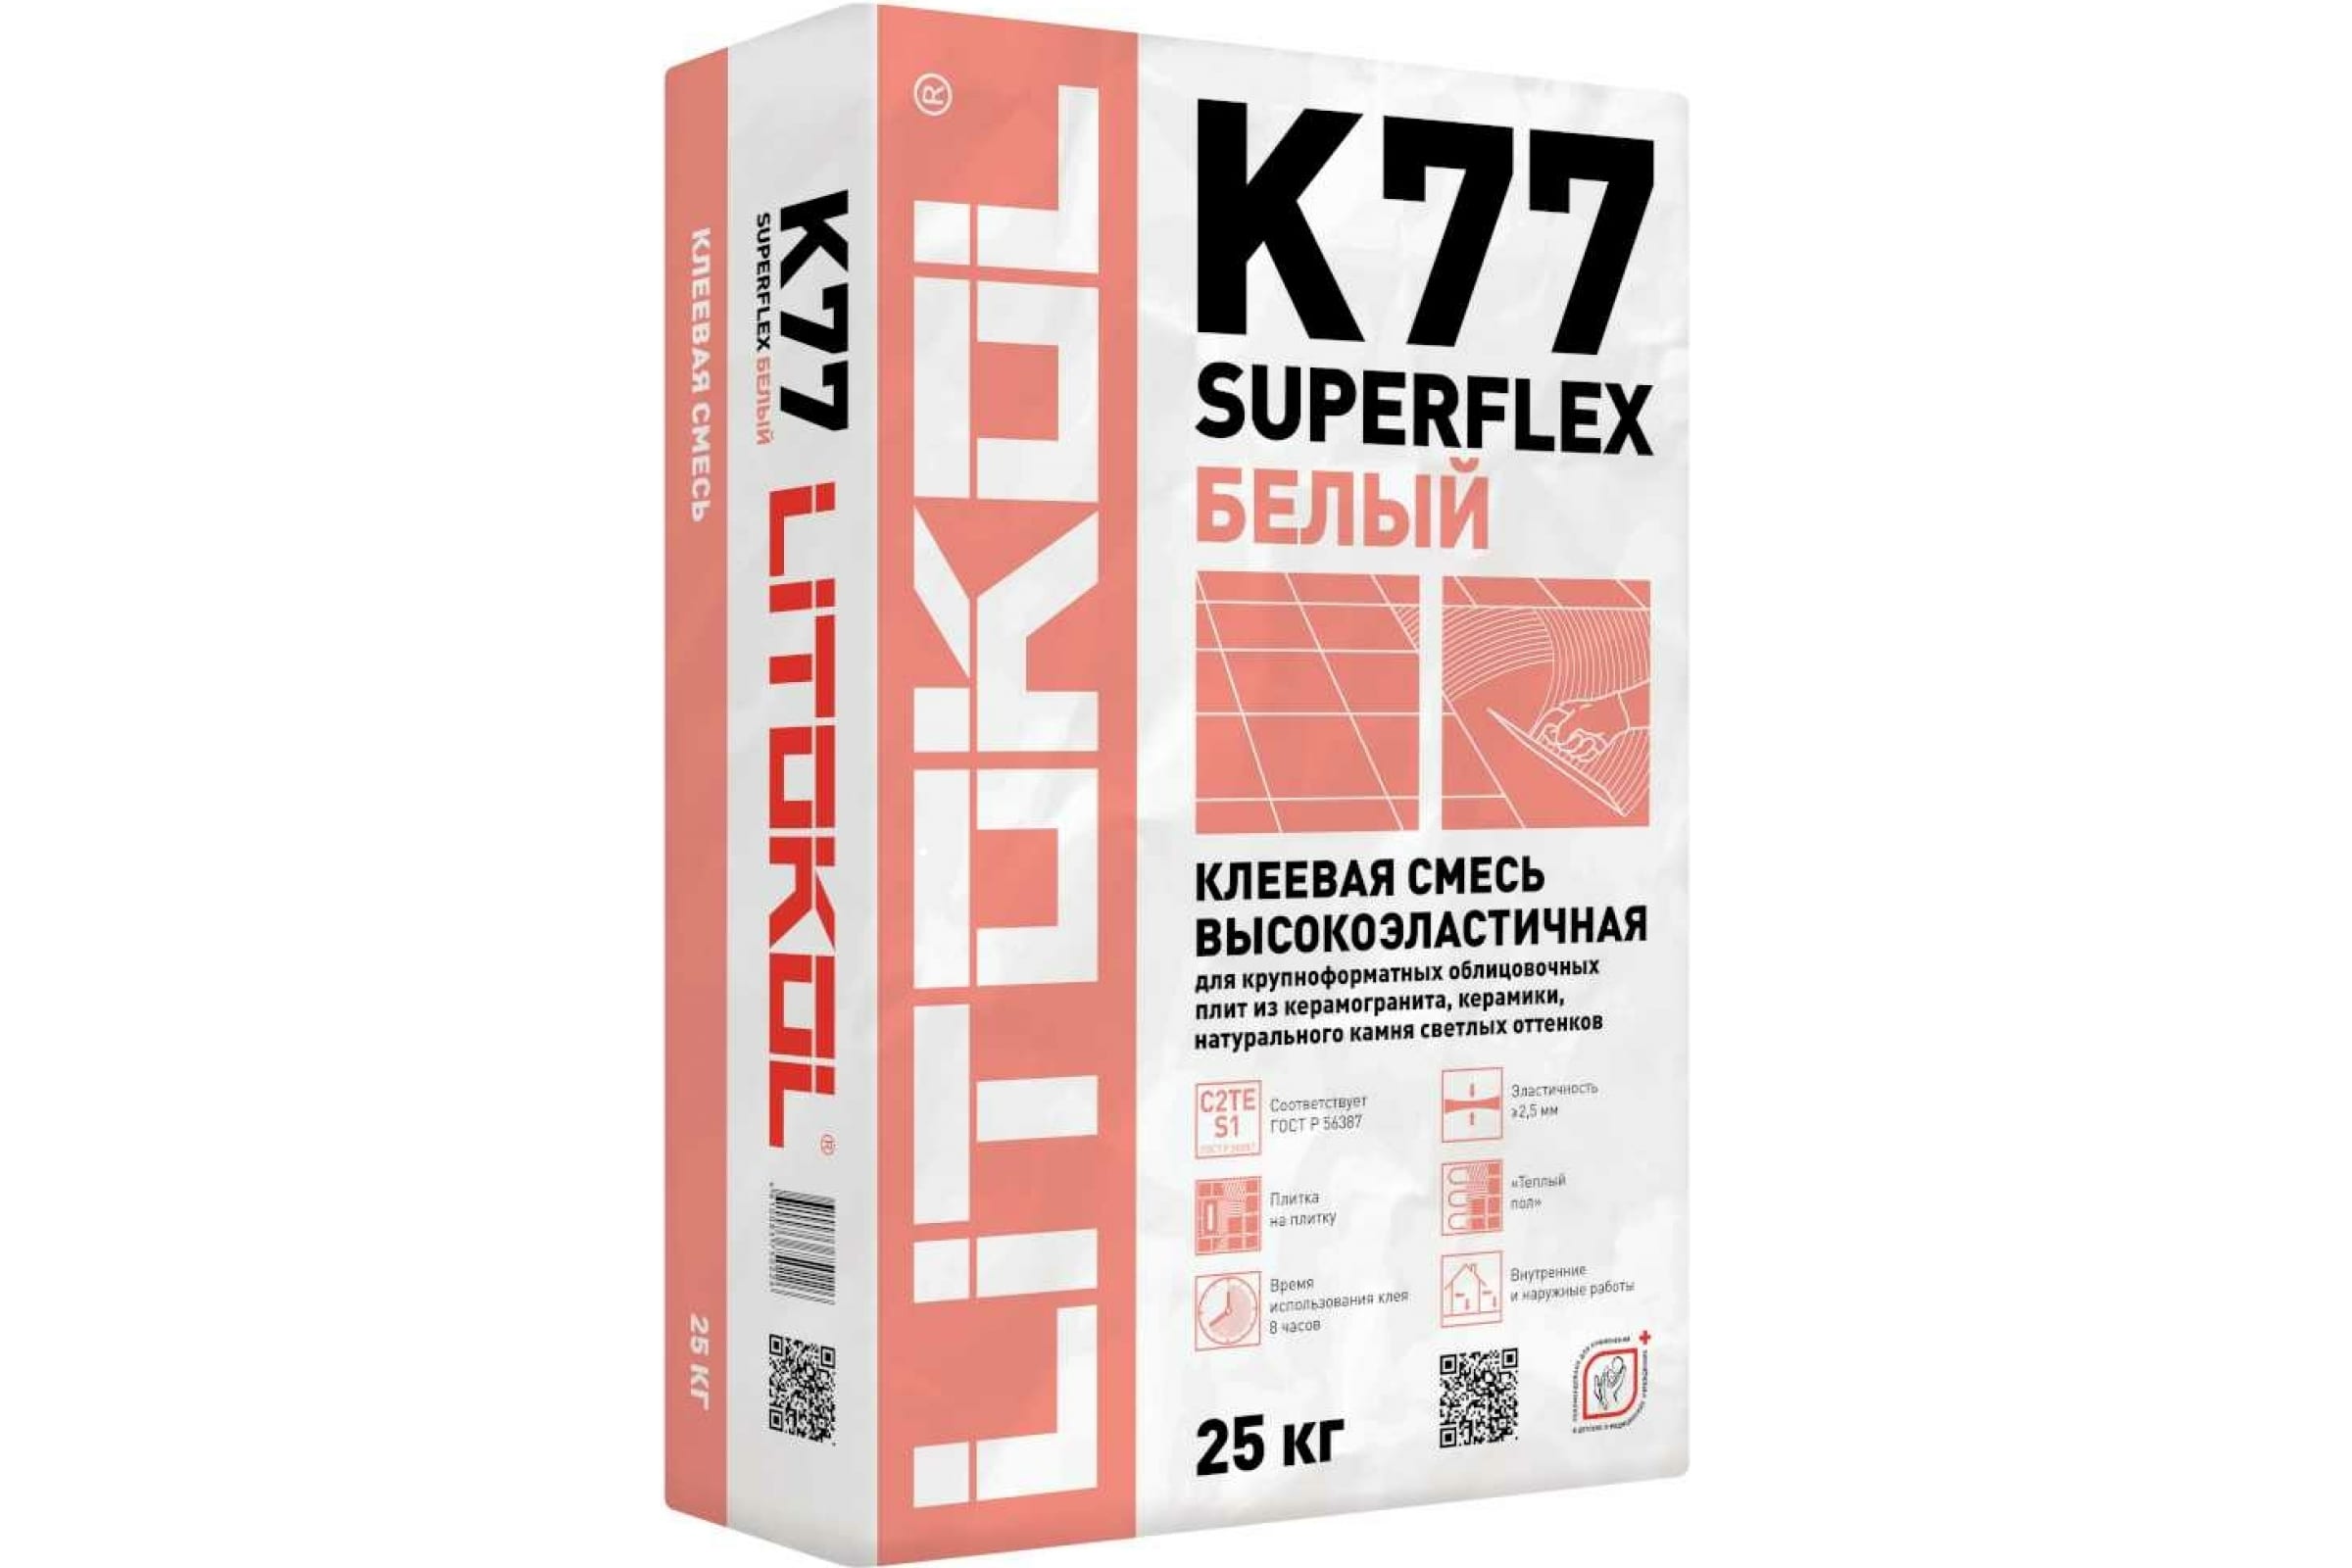 фото Клеевая смесь litokol superflex k77 25 кг, белый 484960002